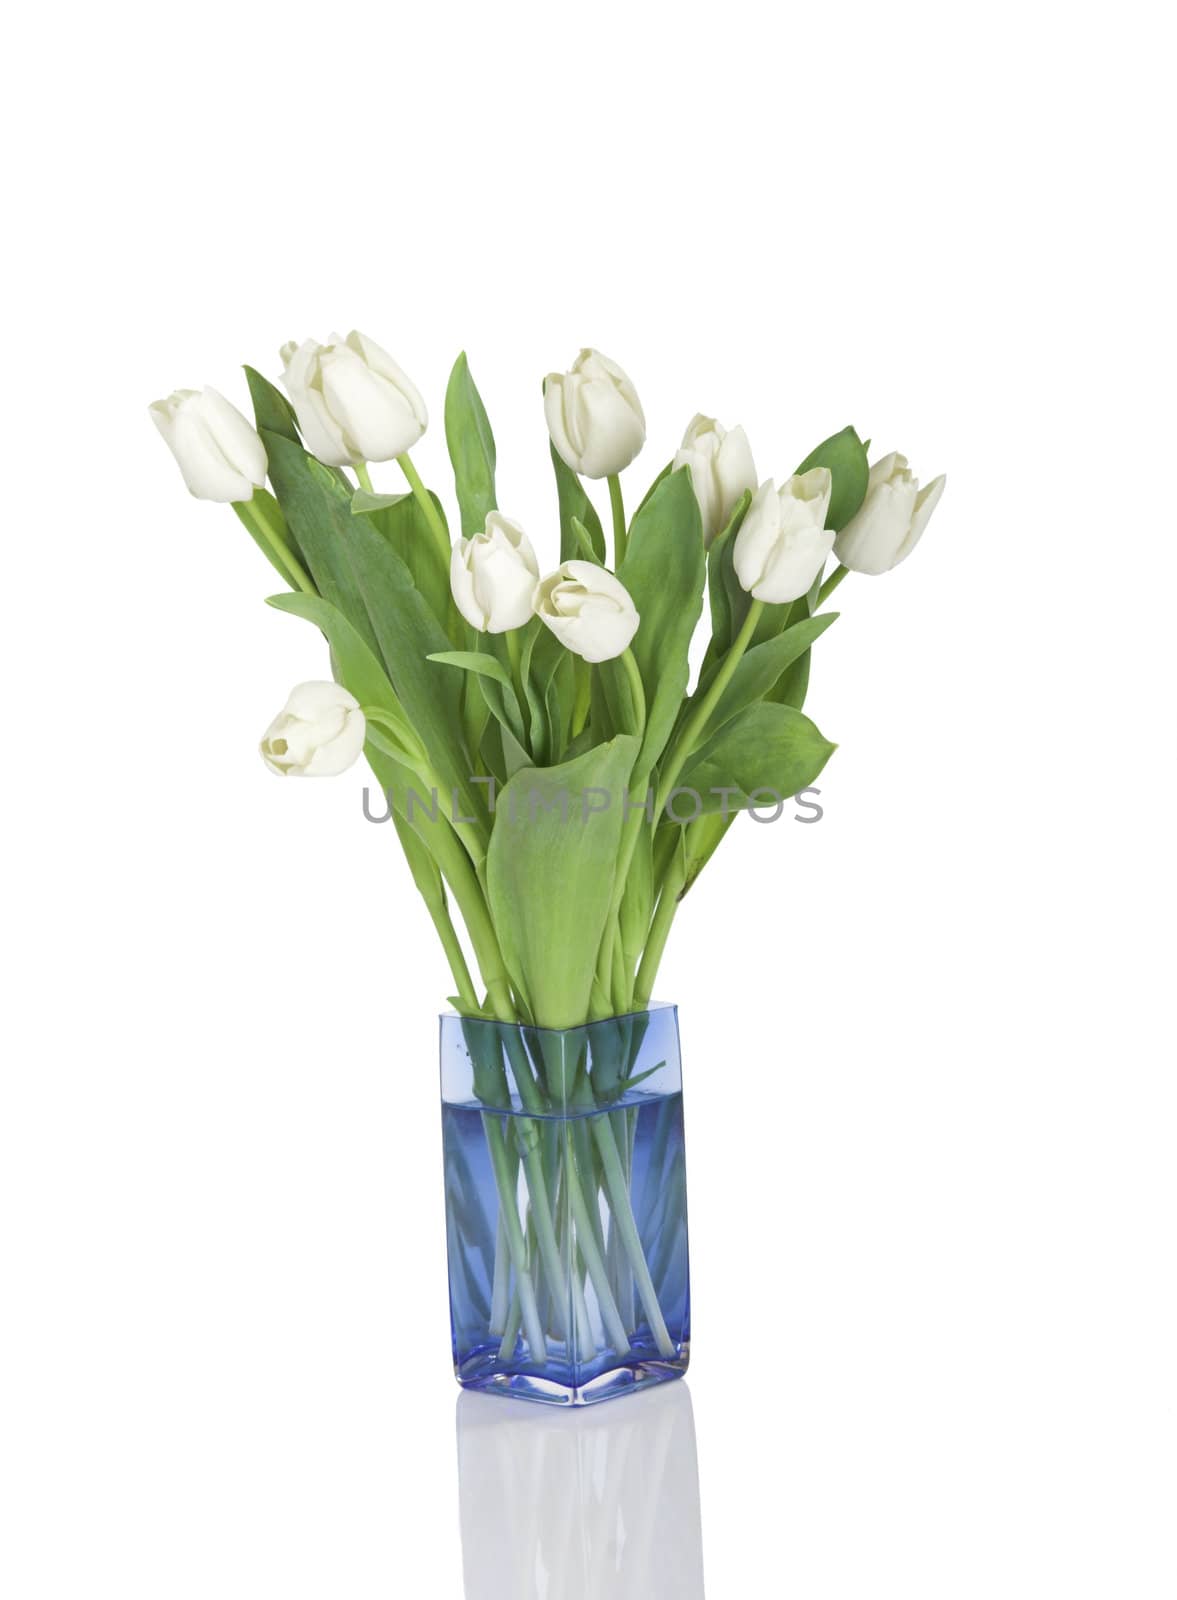 Beautiful white tulips isolated on white background